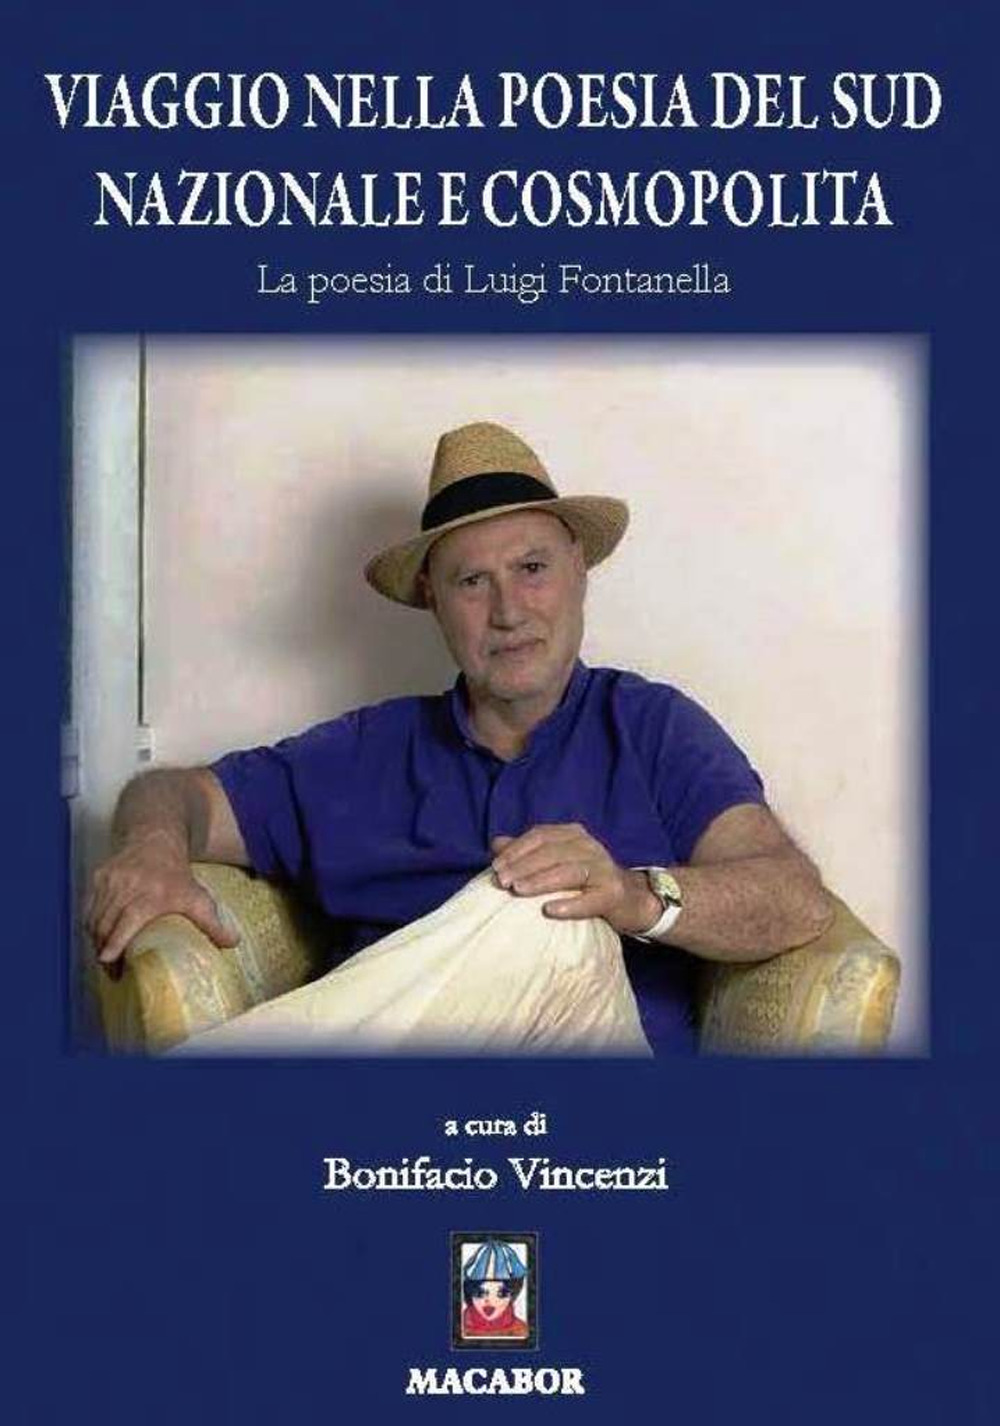 Image of Viaggio nella poesia del sud nazionale e cosmopolita. La poesia di Luigi Fontanella